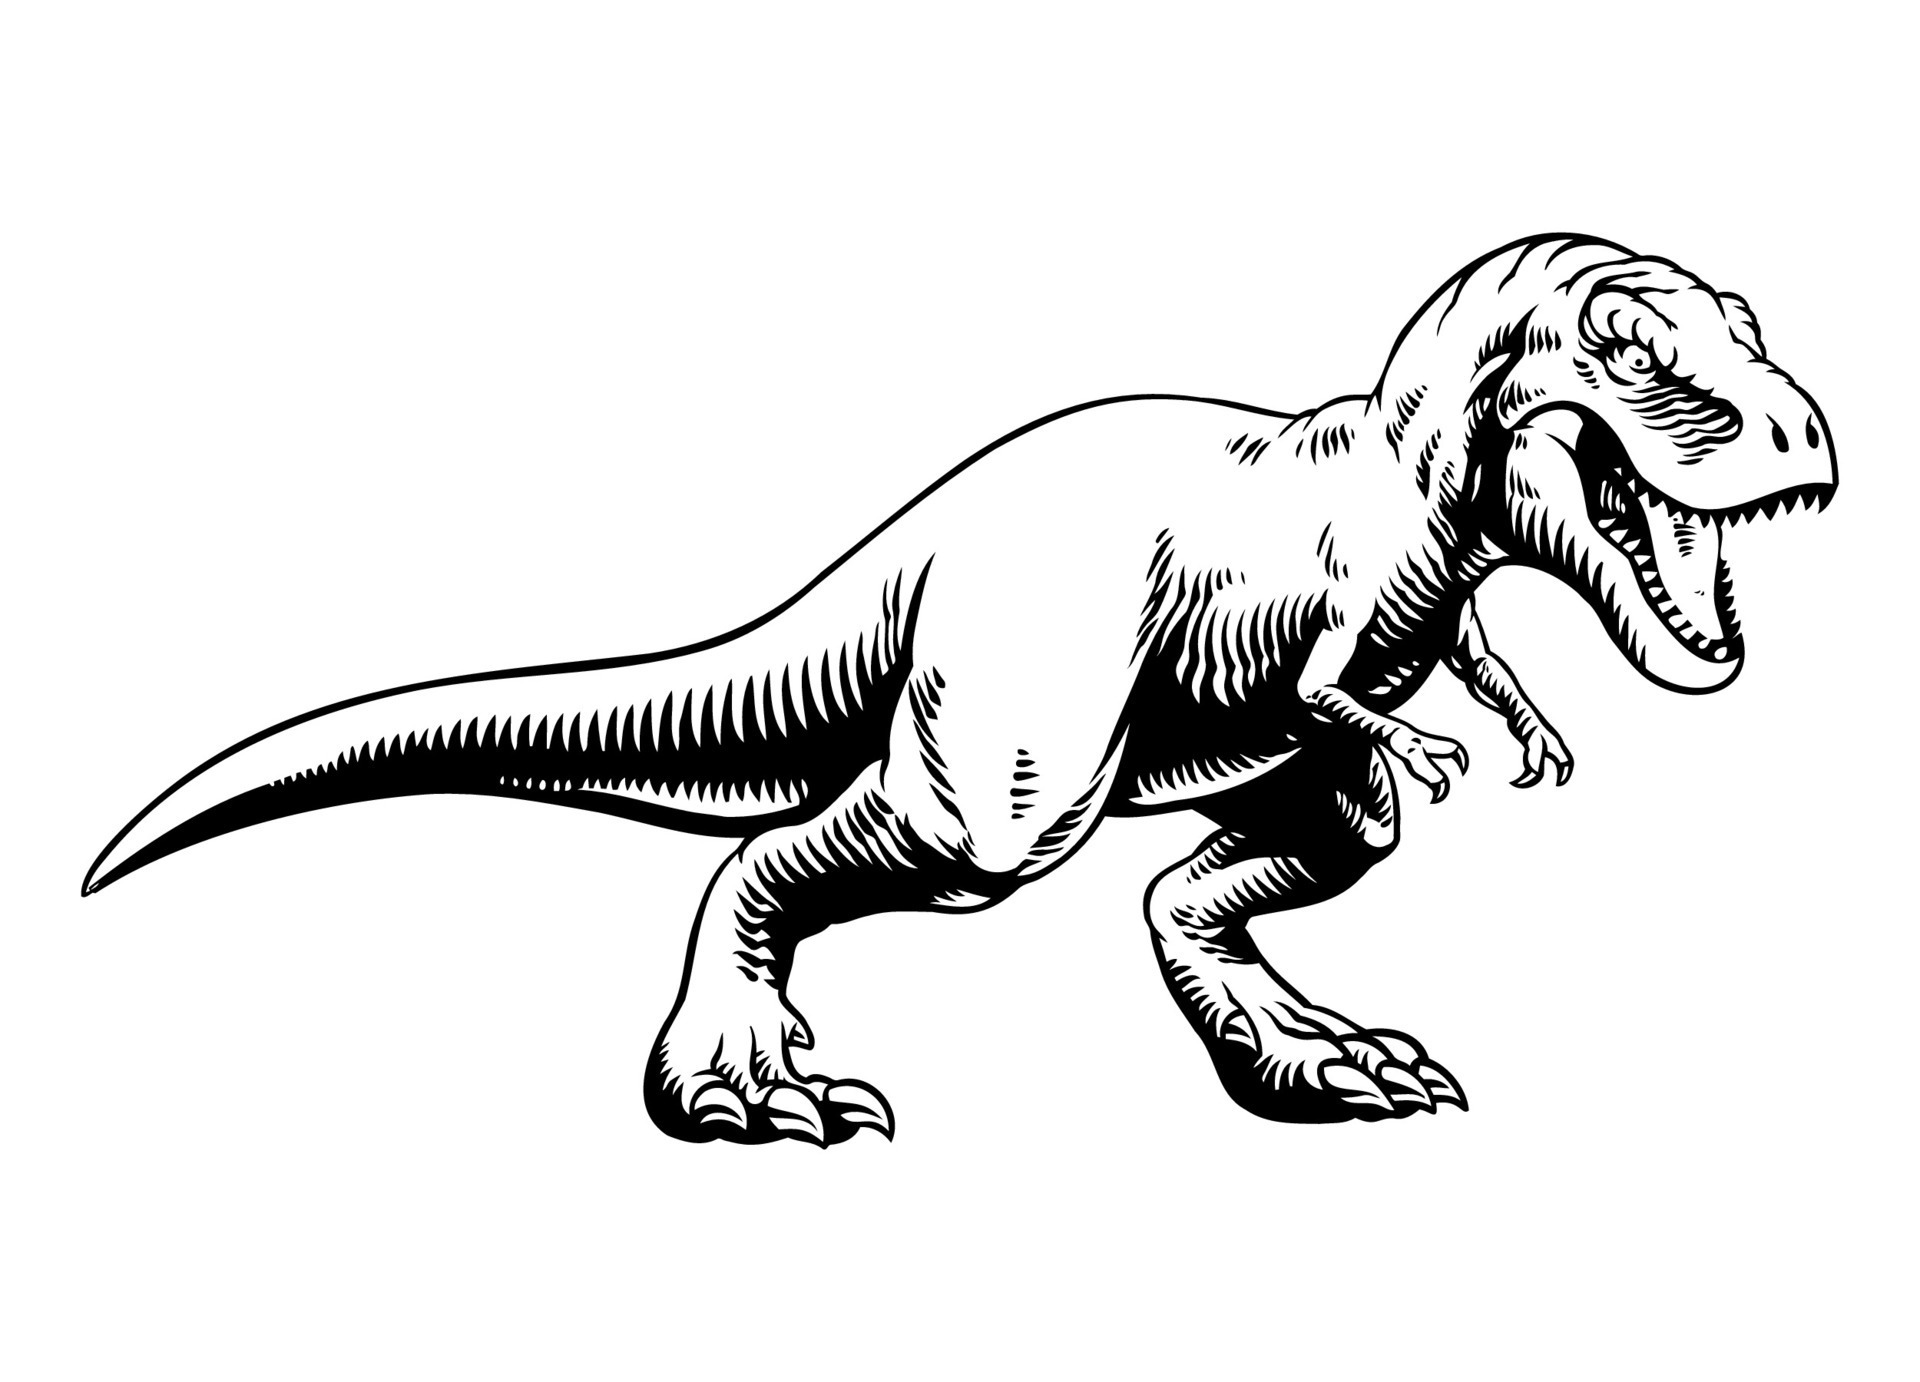 Ilustração da silhueta preto e branco do tyrannosaurus rex trex